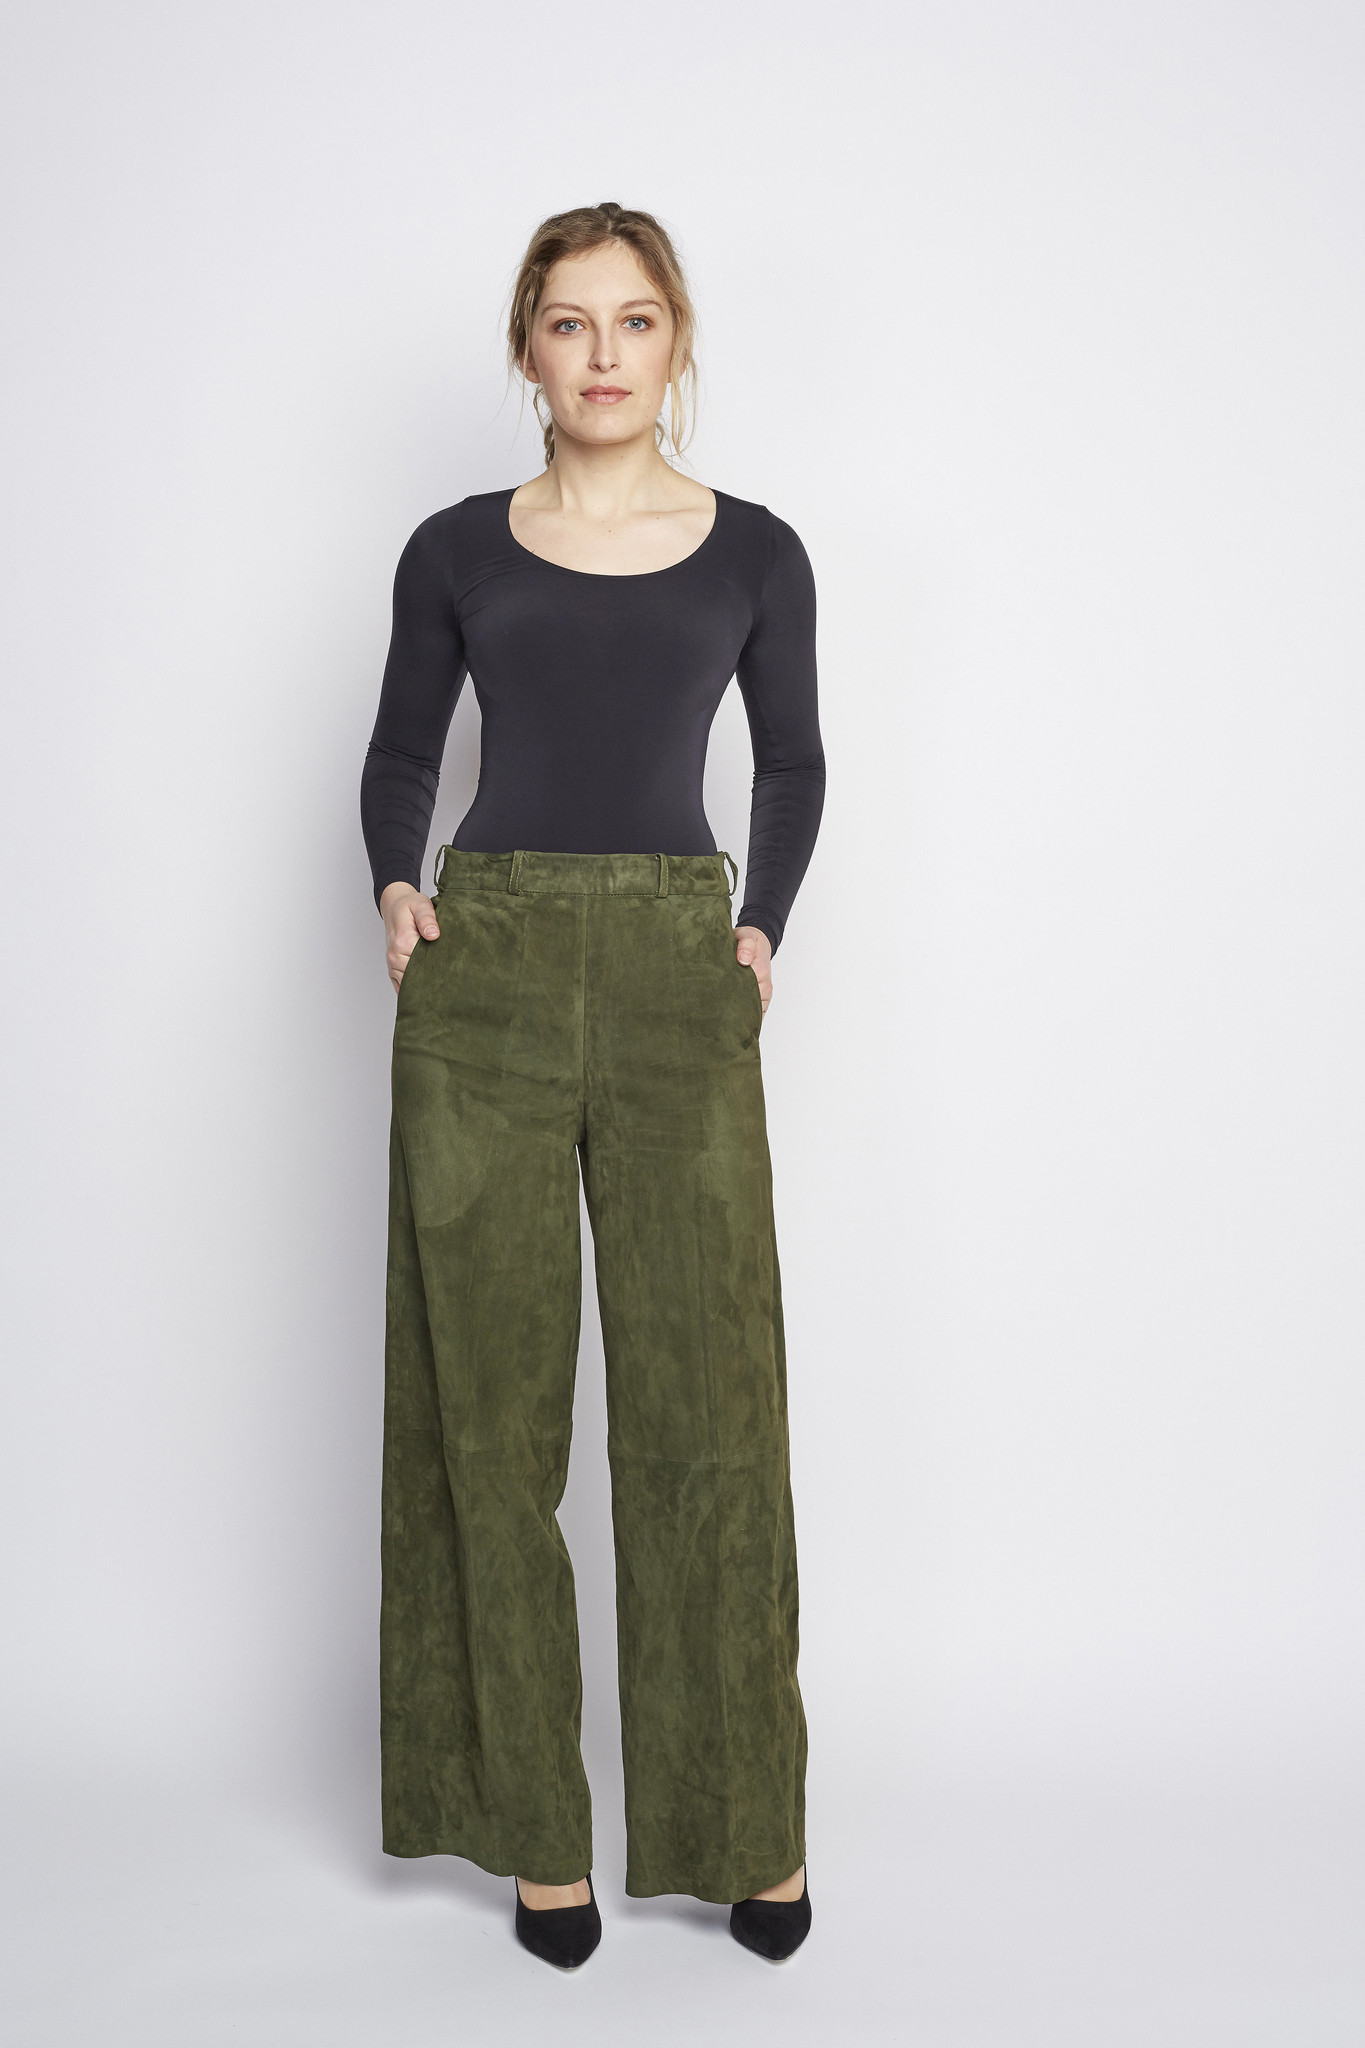 twintig invoeren ergens bij betrokken zijn Dames stretch velours broek in groen | Zinga Leather - ZINGA Leather